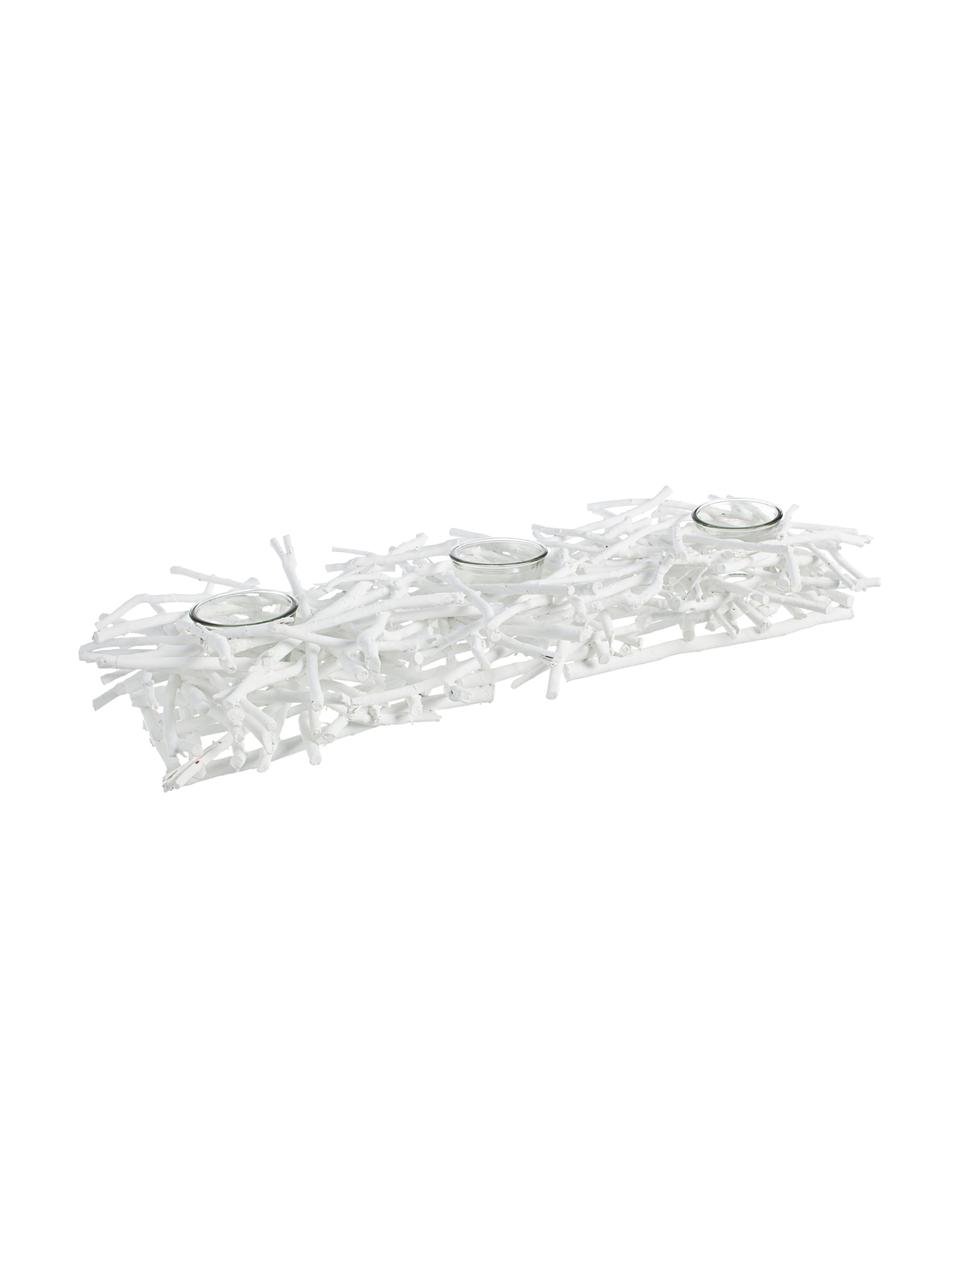 Komplet świeczników na tealighty Recto, 4 elem., Transparentny, biały, S 70 x W 10 cm